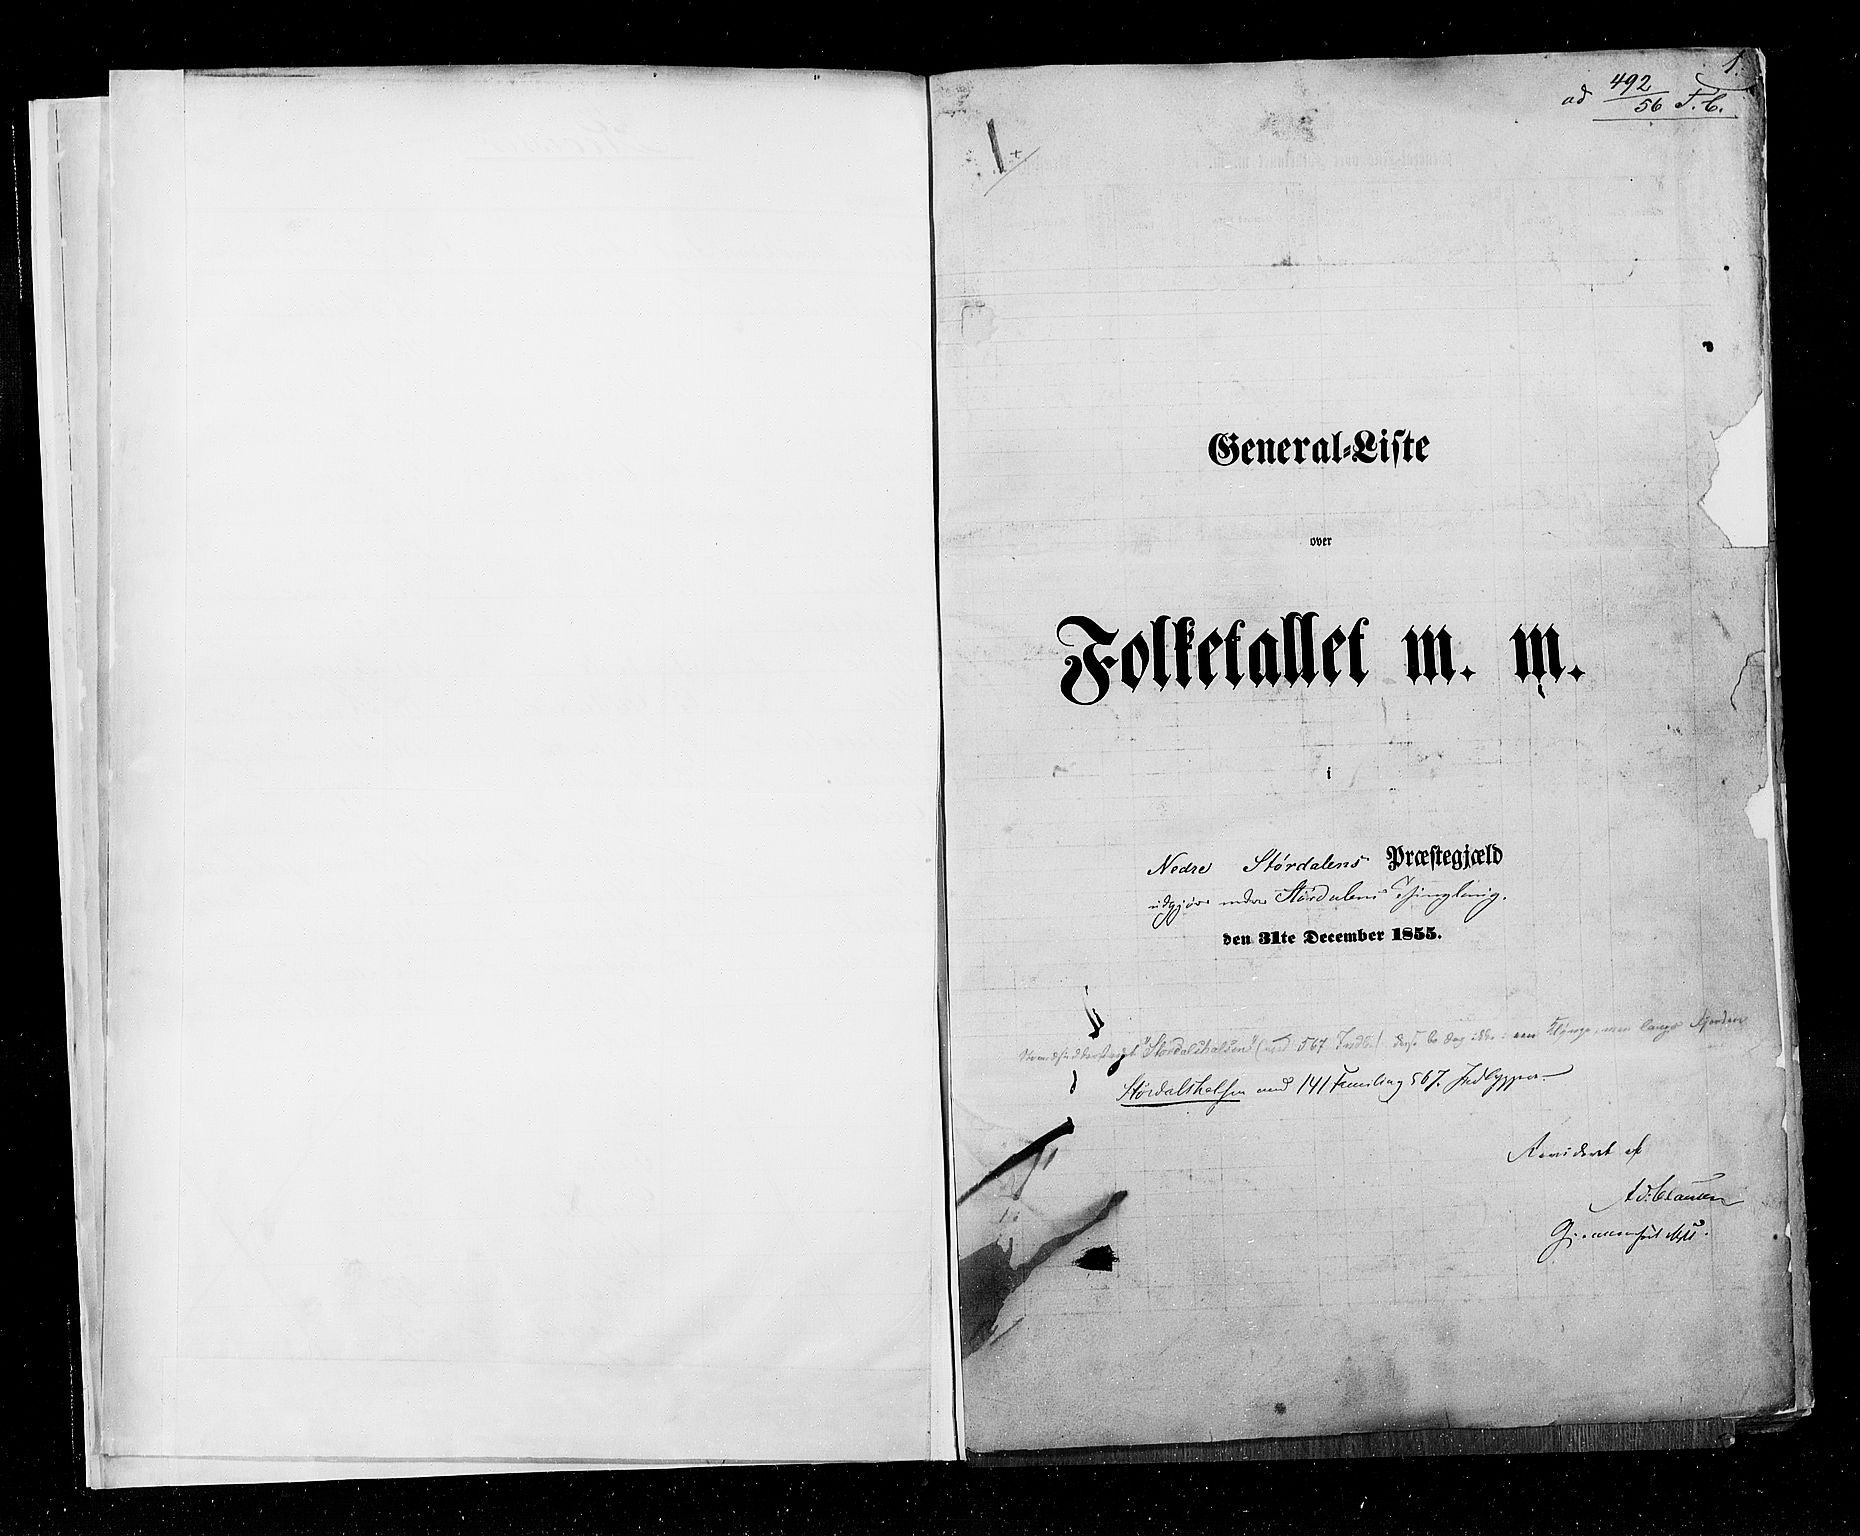 RA, Census 1855, vol. 6A: Nordre Trondhjem amt og Nordland amt, 1855, p. 1